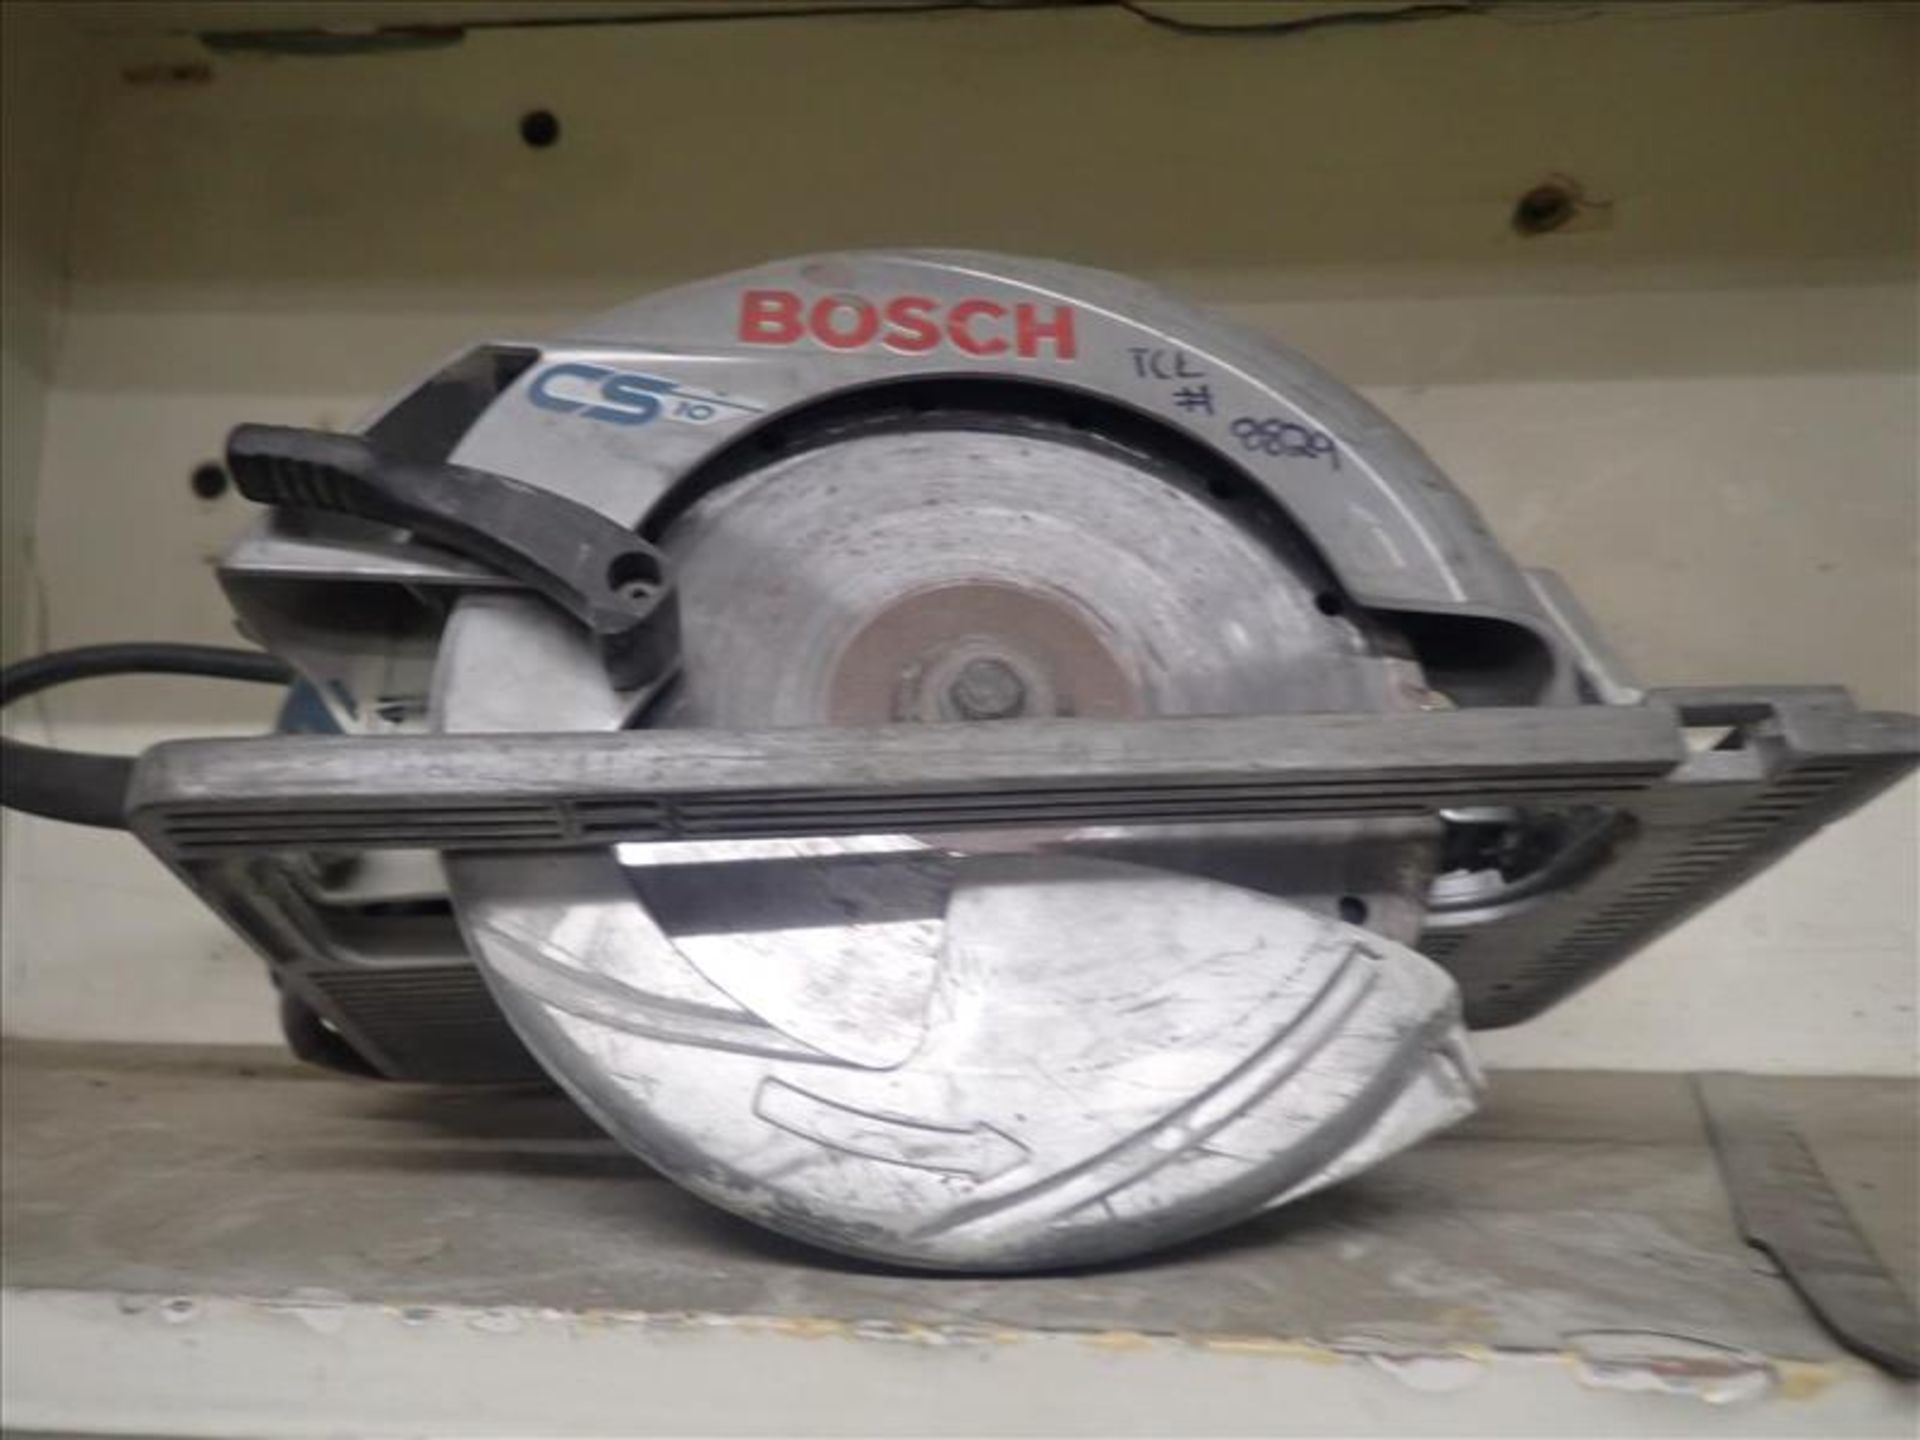 Bosch electric circular saw (Tag 8829 Loc Mill Carp Shop)